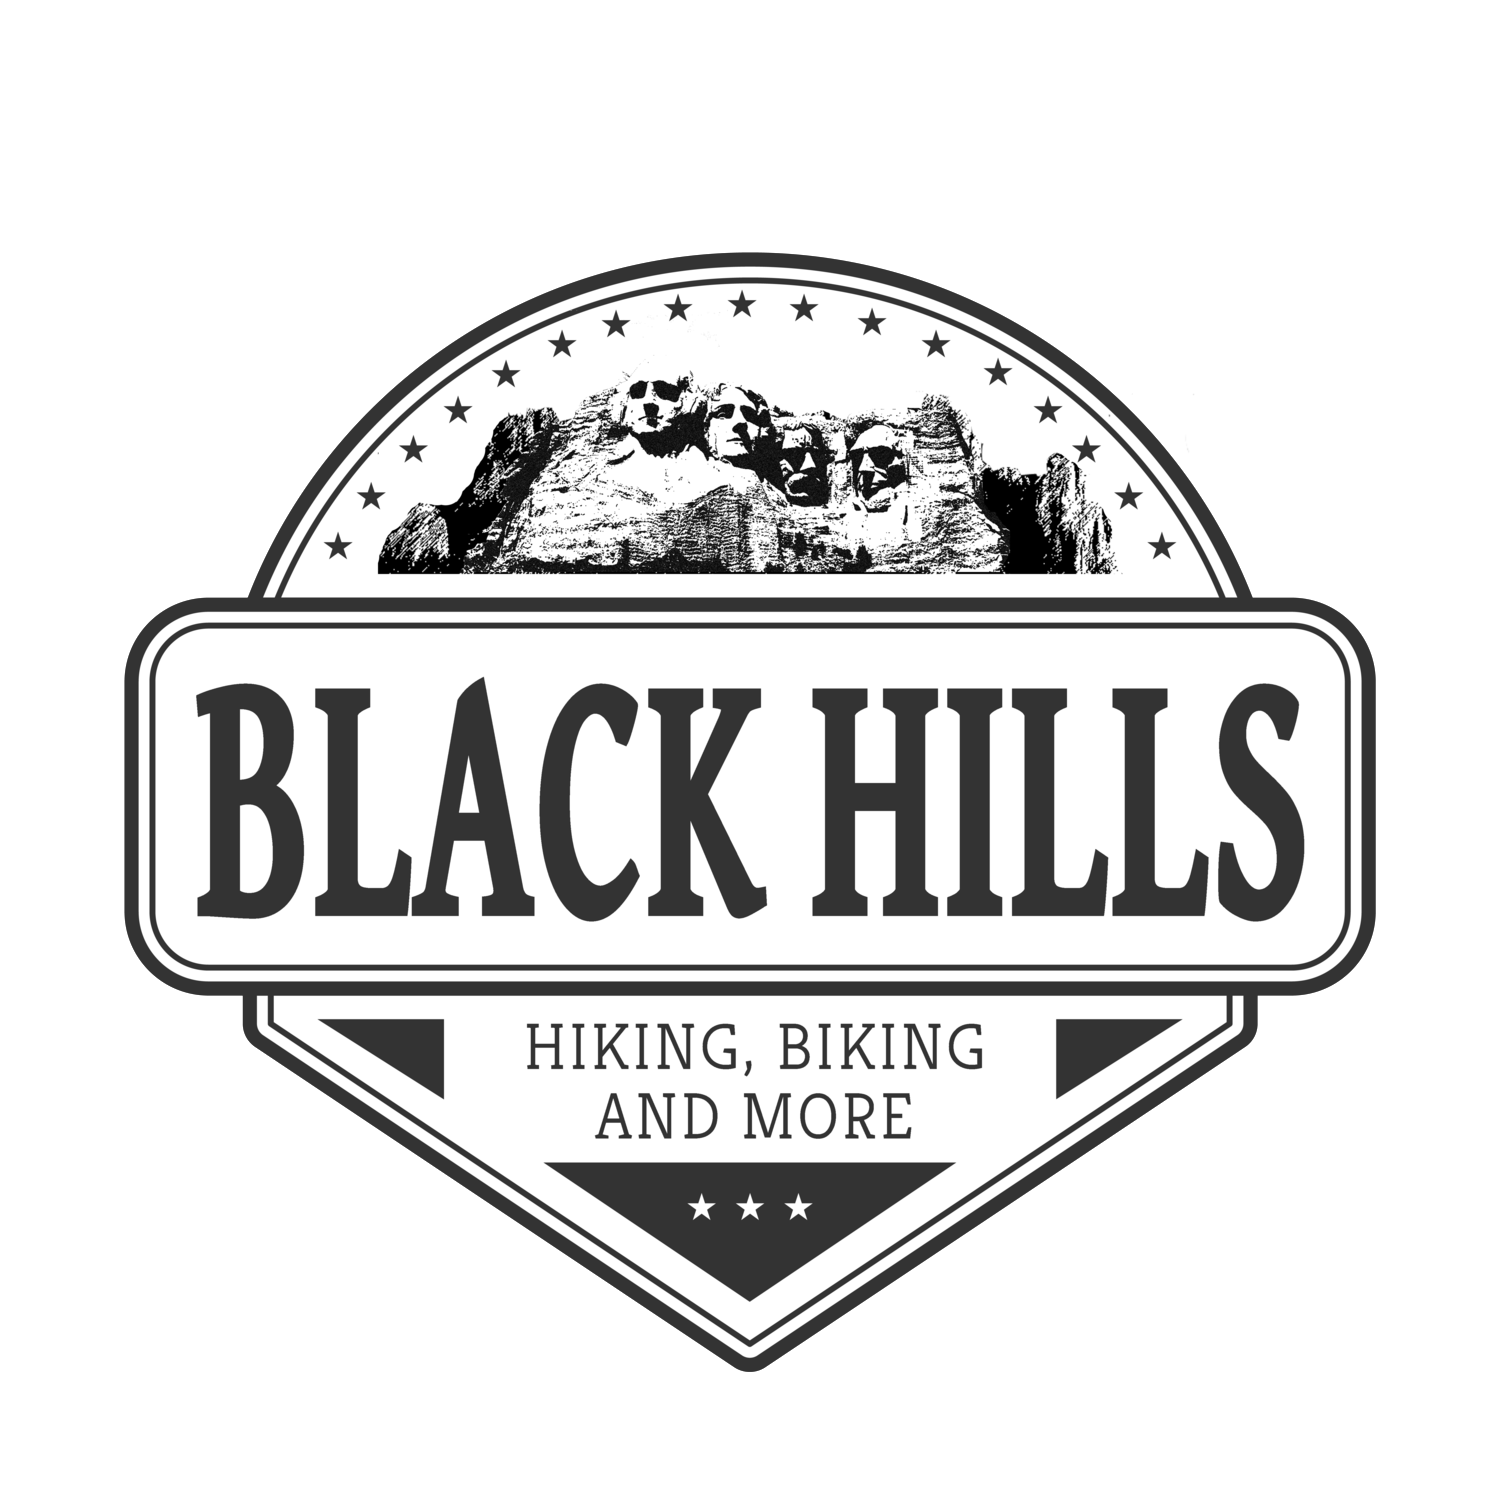 Black Hills Hiking, Biking, and More